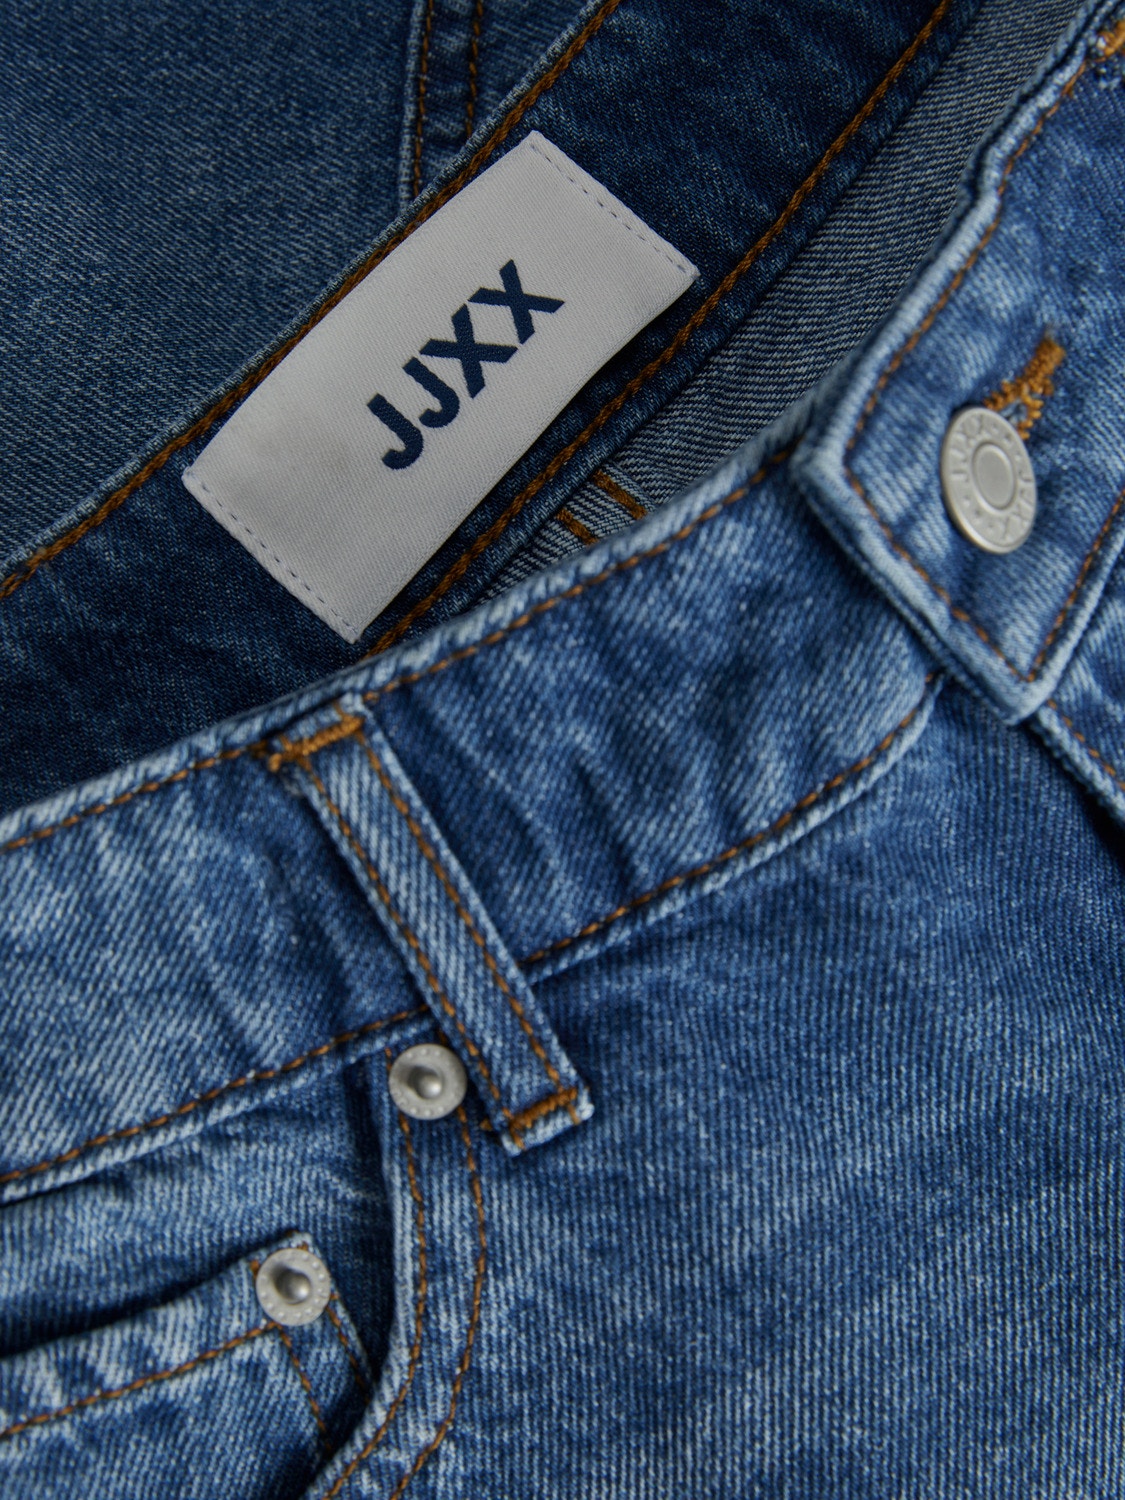 JJXX JXAURA Džinsiniai šortai -Medium Blue Denim - 12227837